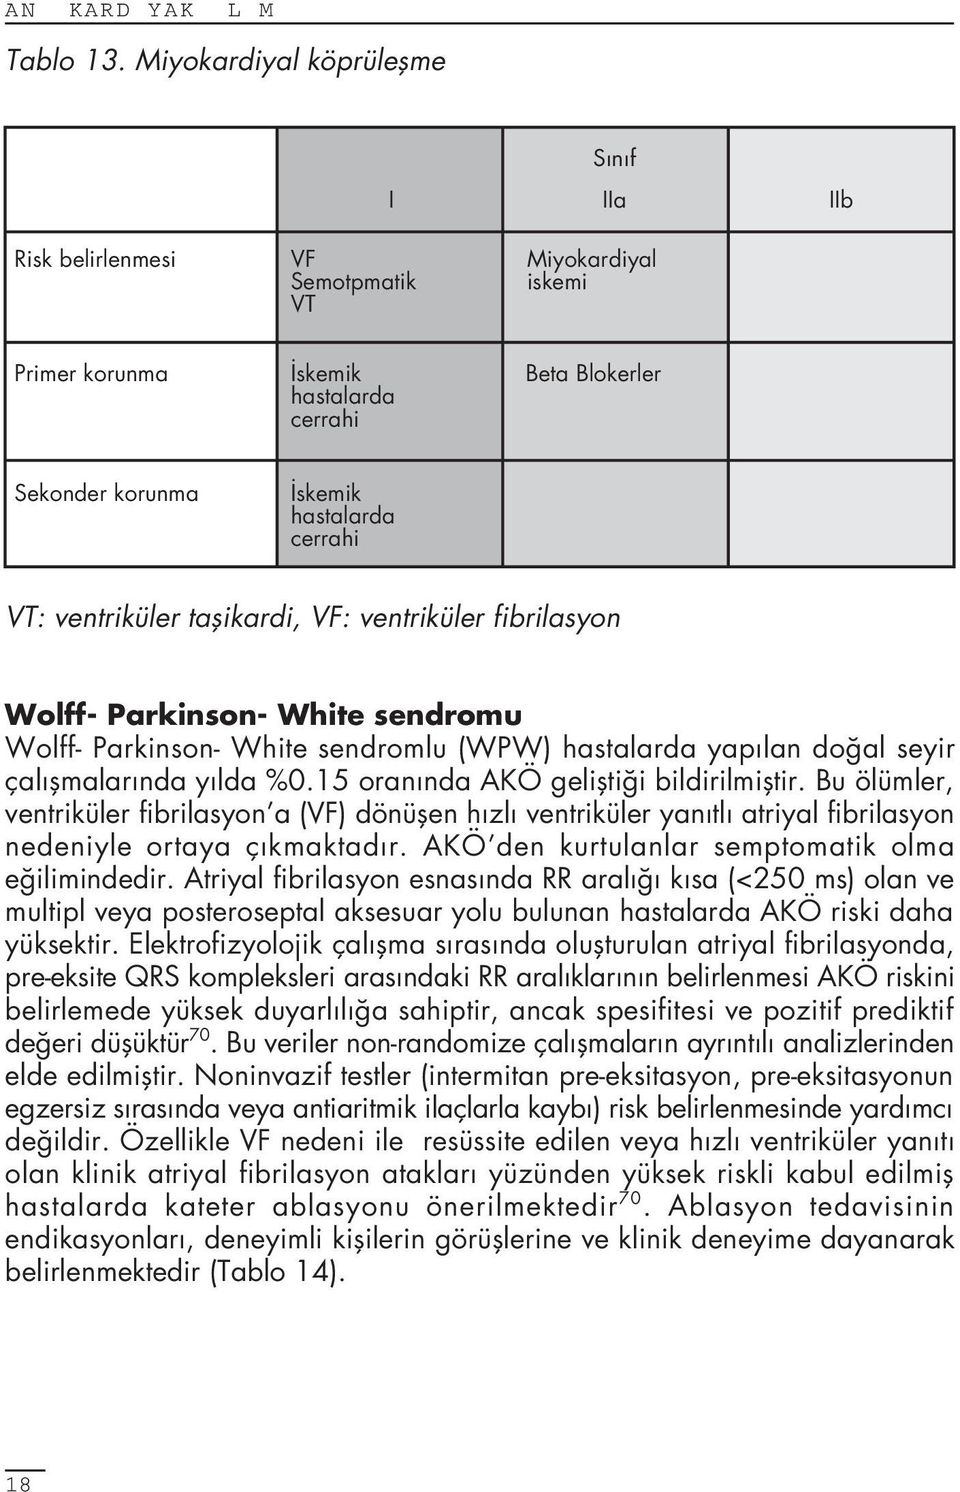 ventriküler taflikardi, VF: ventriküler fibrilasyon Wolff- Parkinson- White sendromu Wolff- Parkinson- White sendromlu (WPW) hastalarda yap lan do al seyir çal flmalar nda y lda %0.